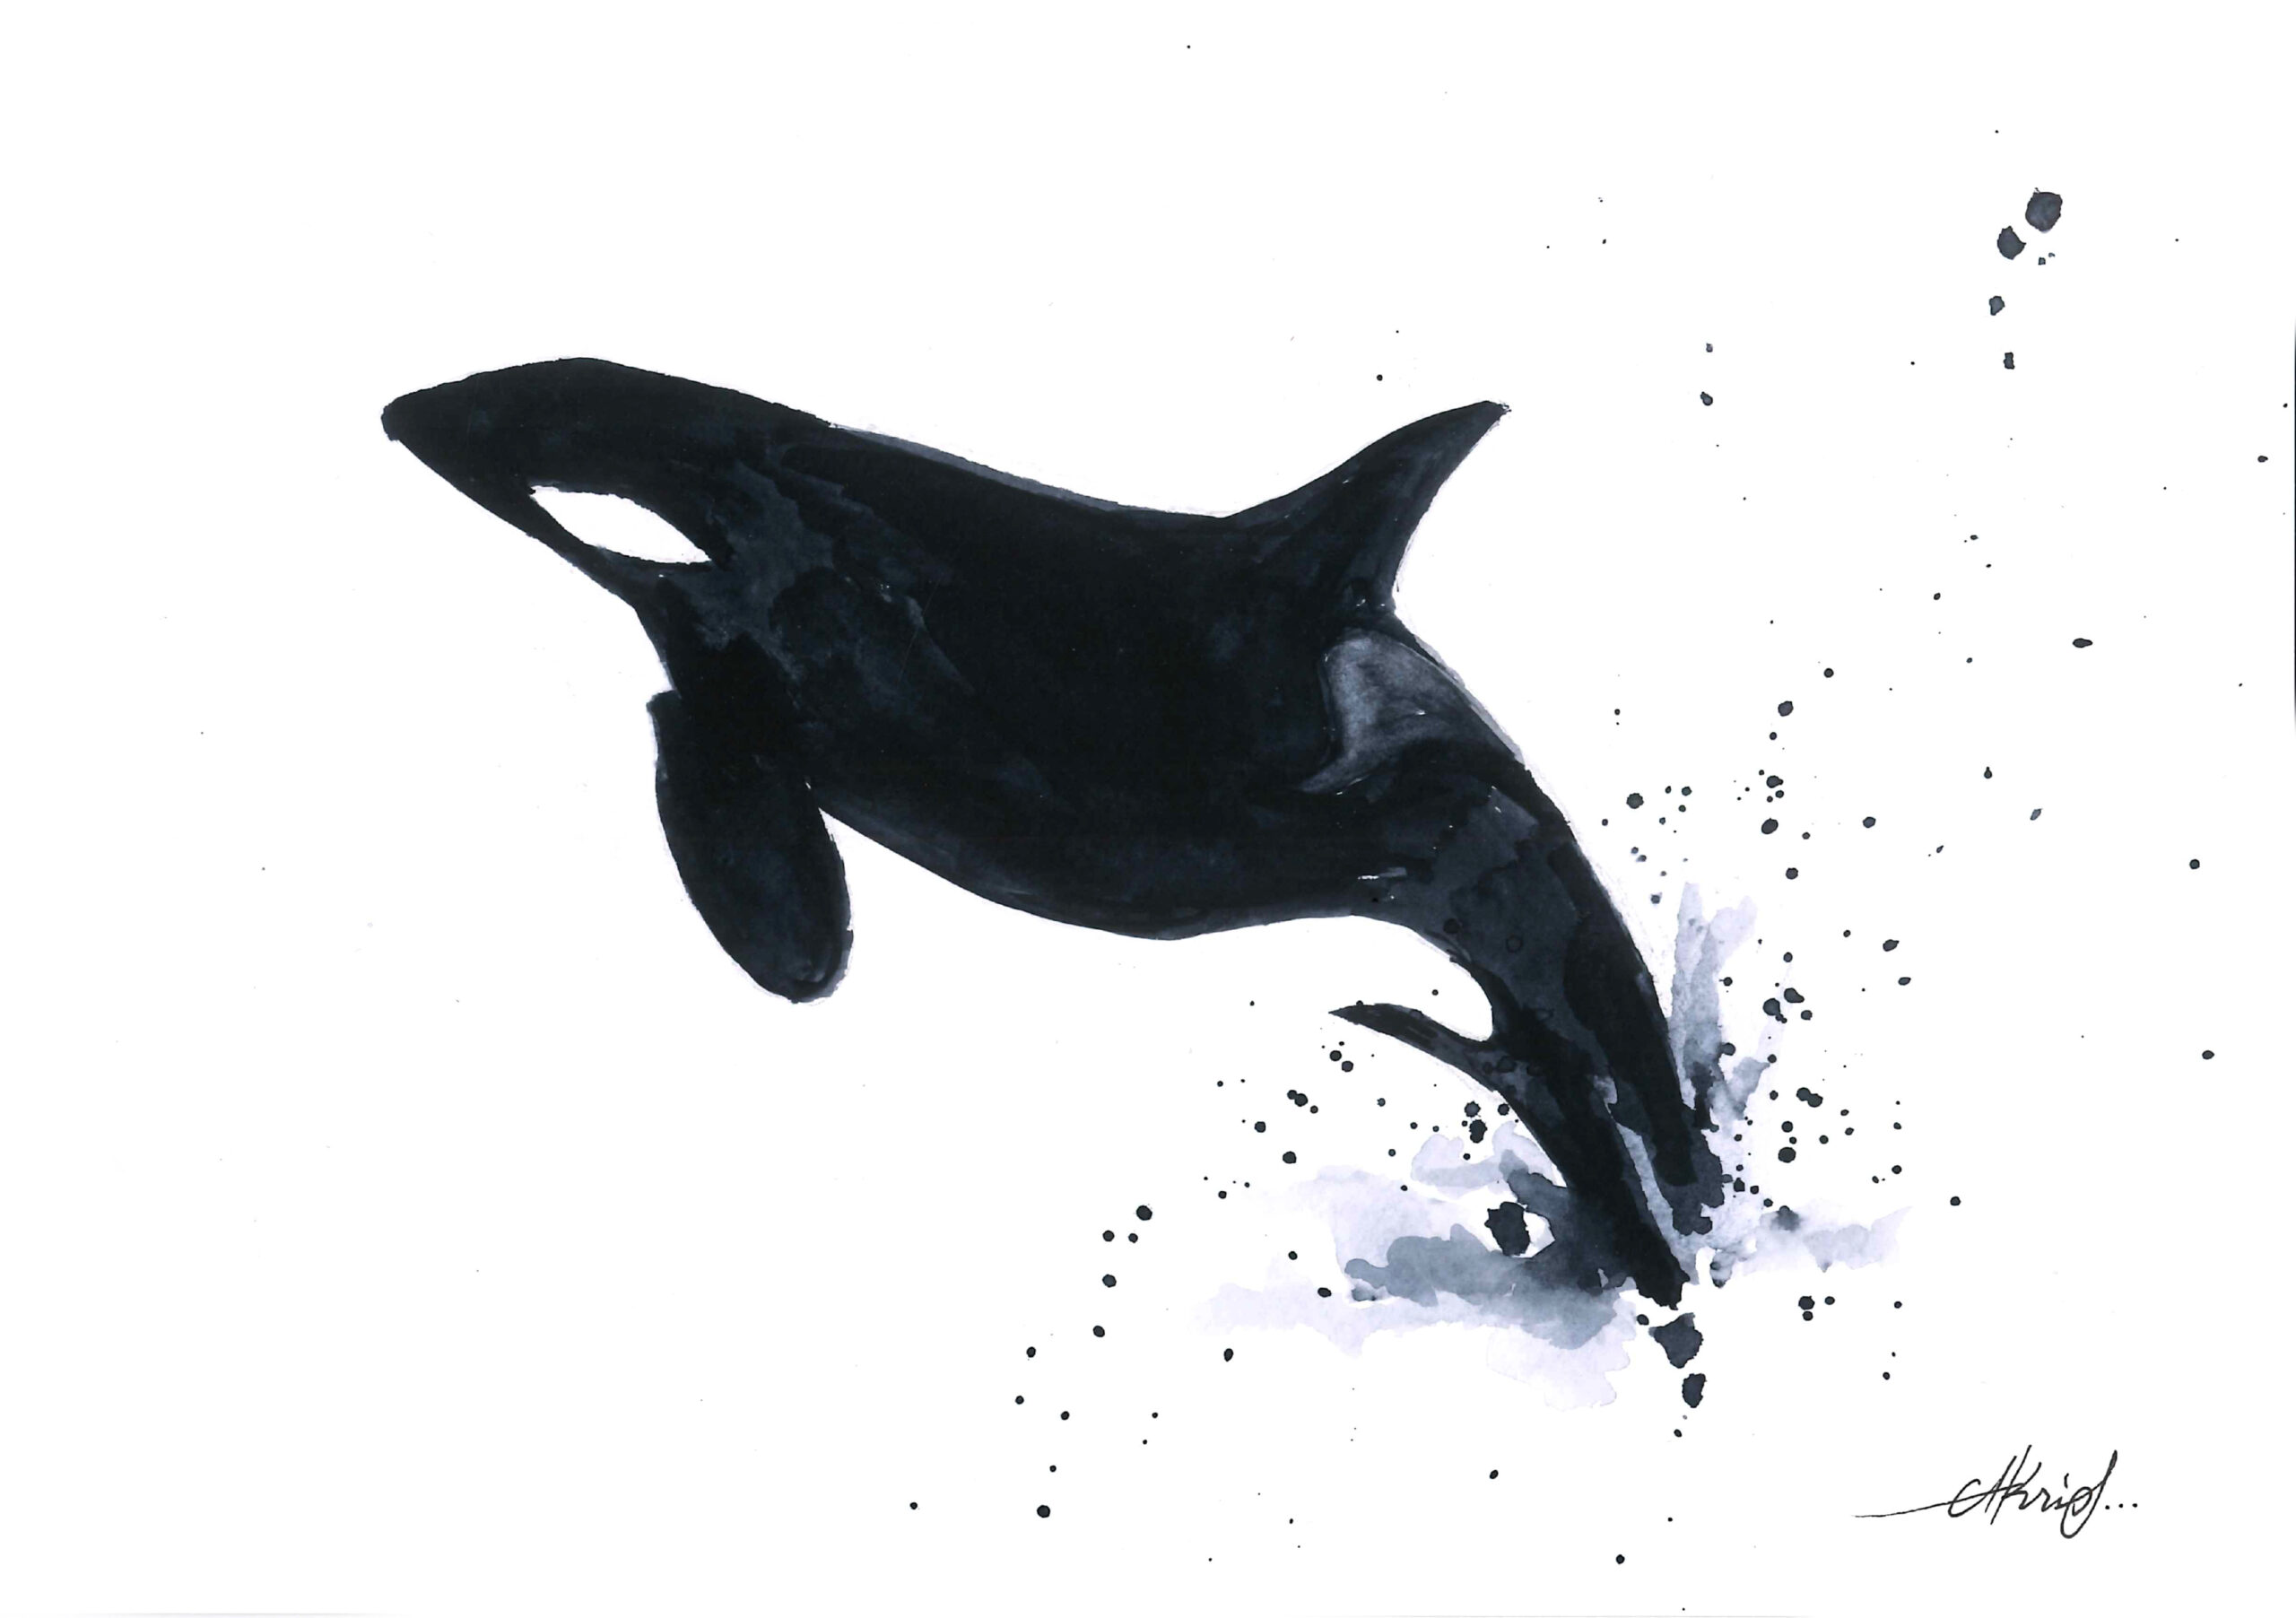 Orca jump II